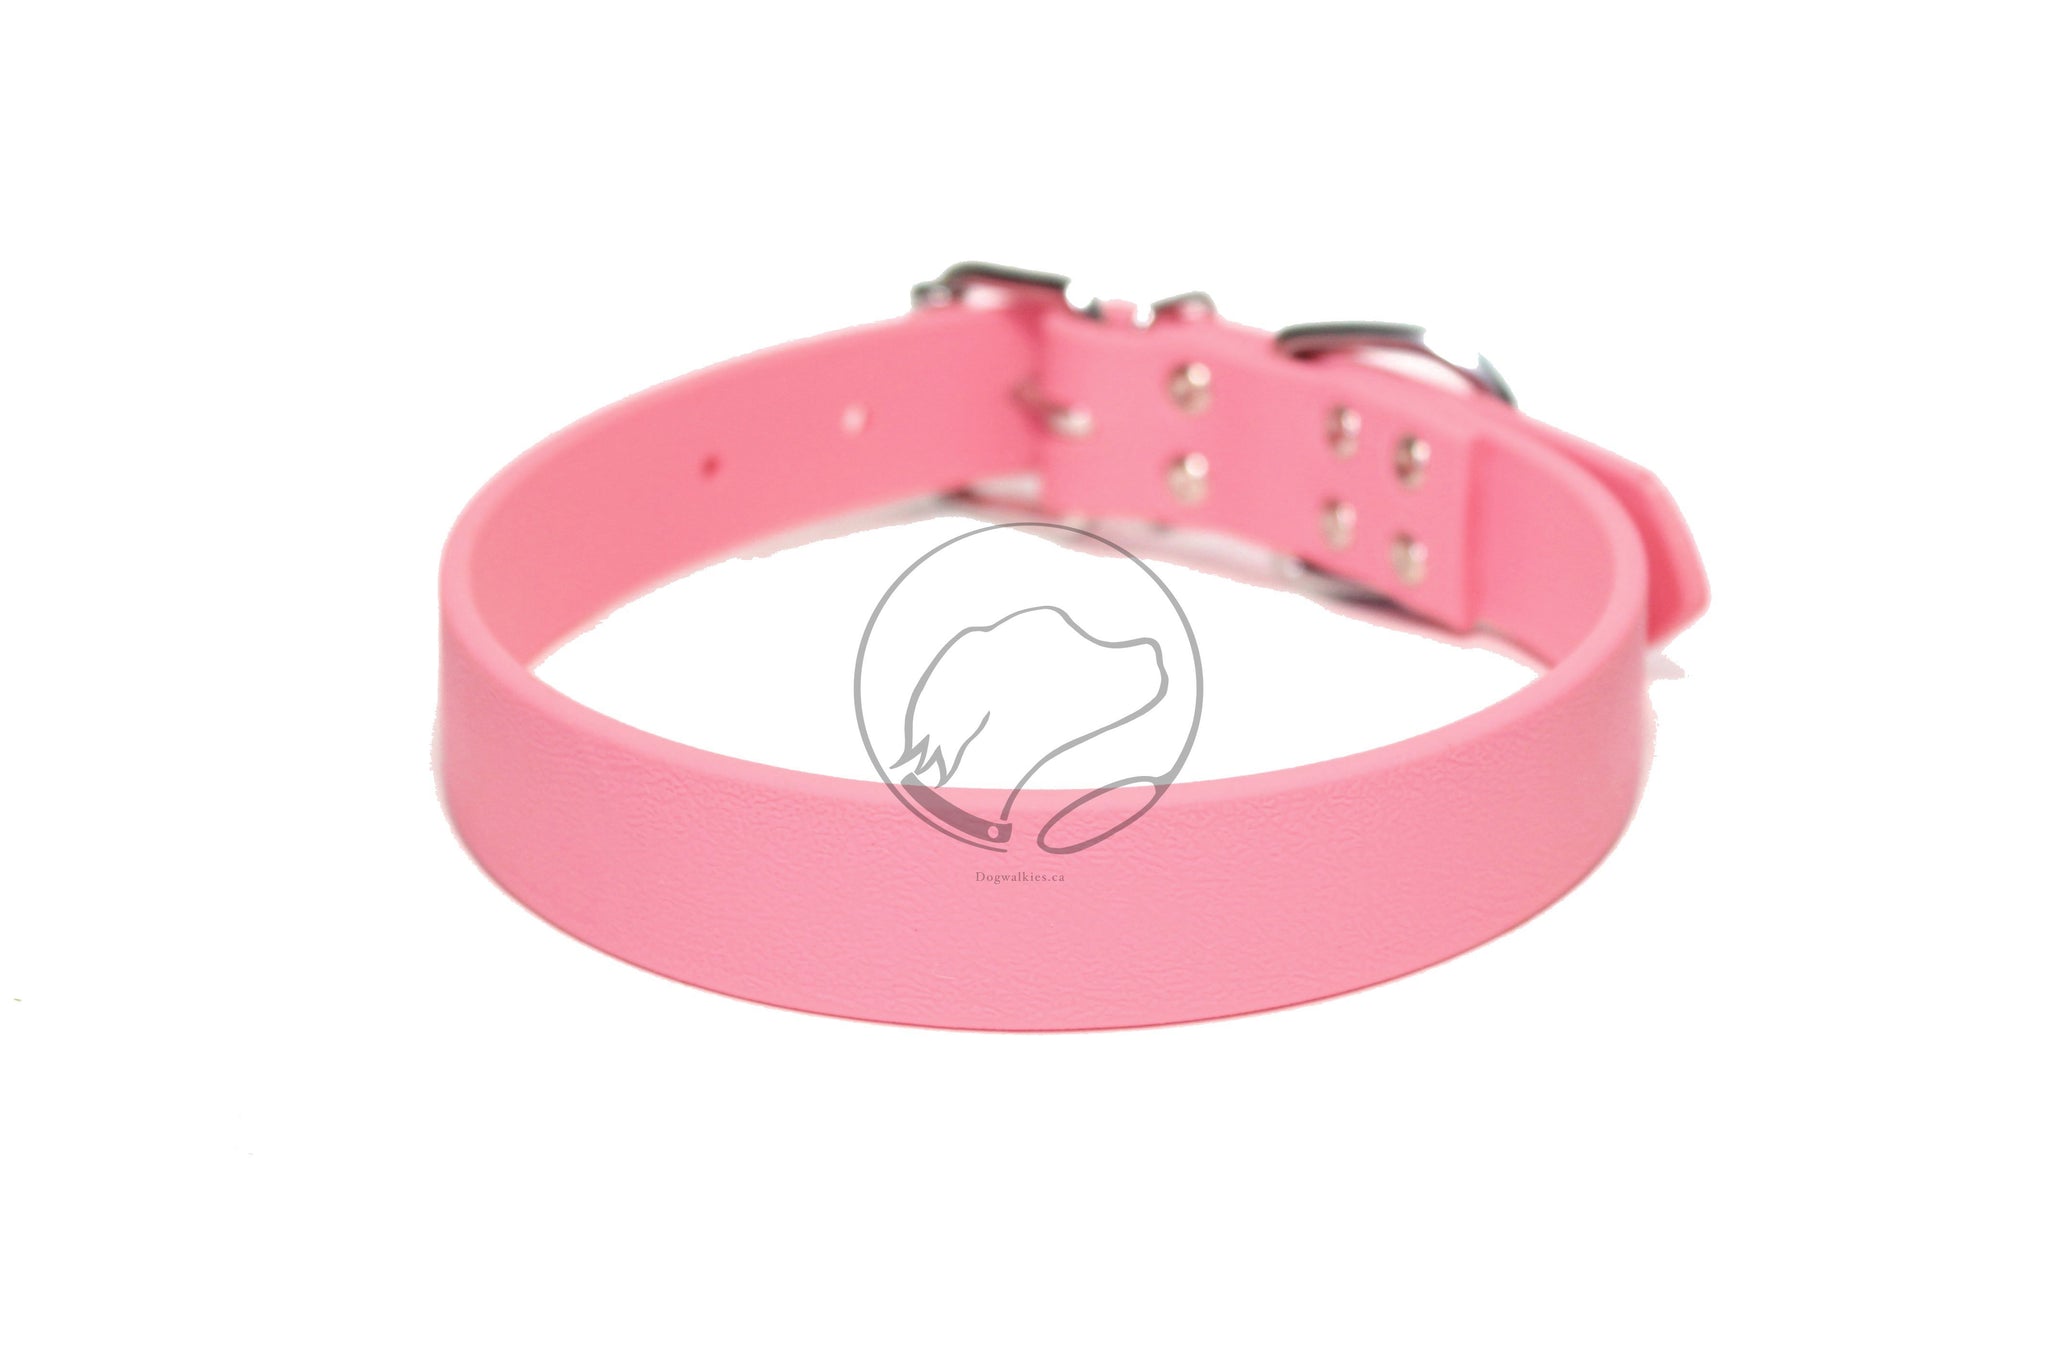 Bubblegum Pink Biothane Dog Collar - 1 inch (25mm) wide